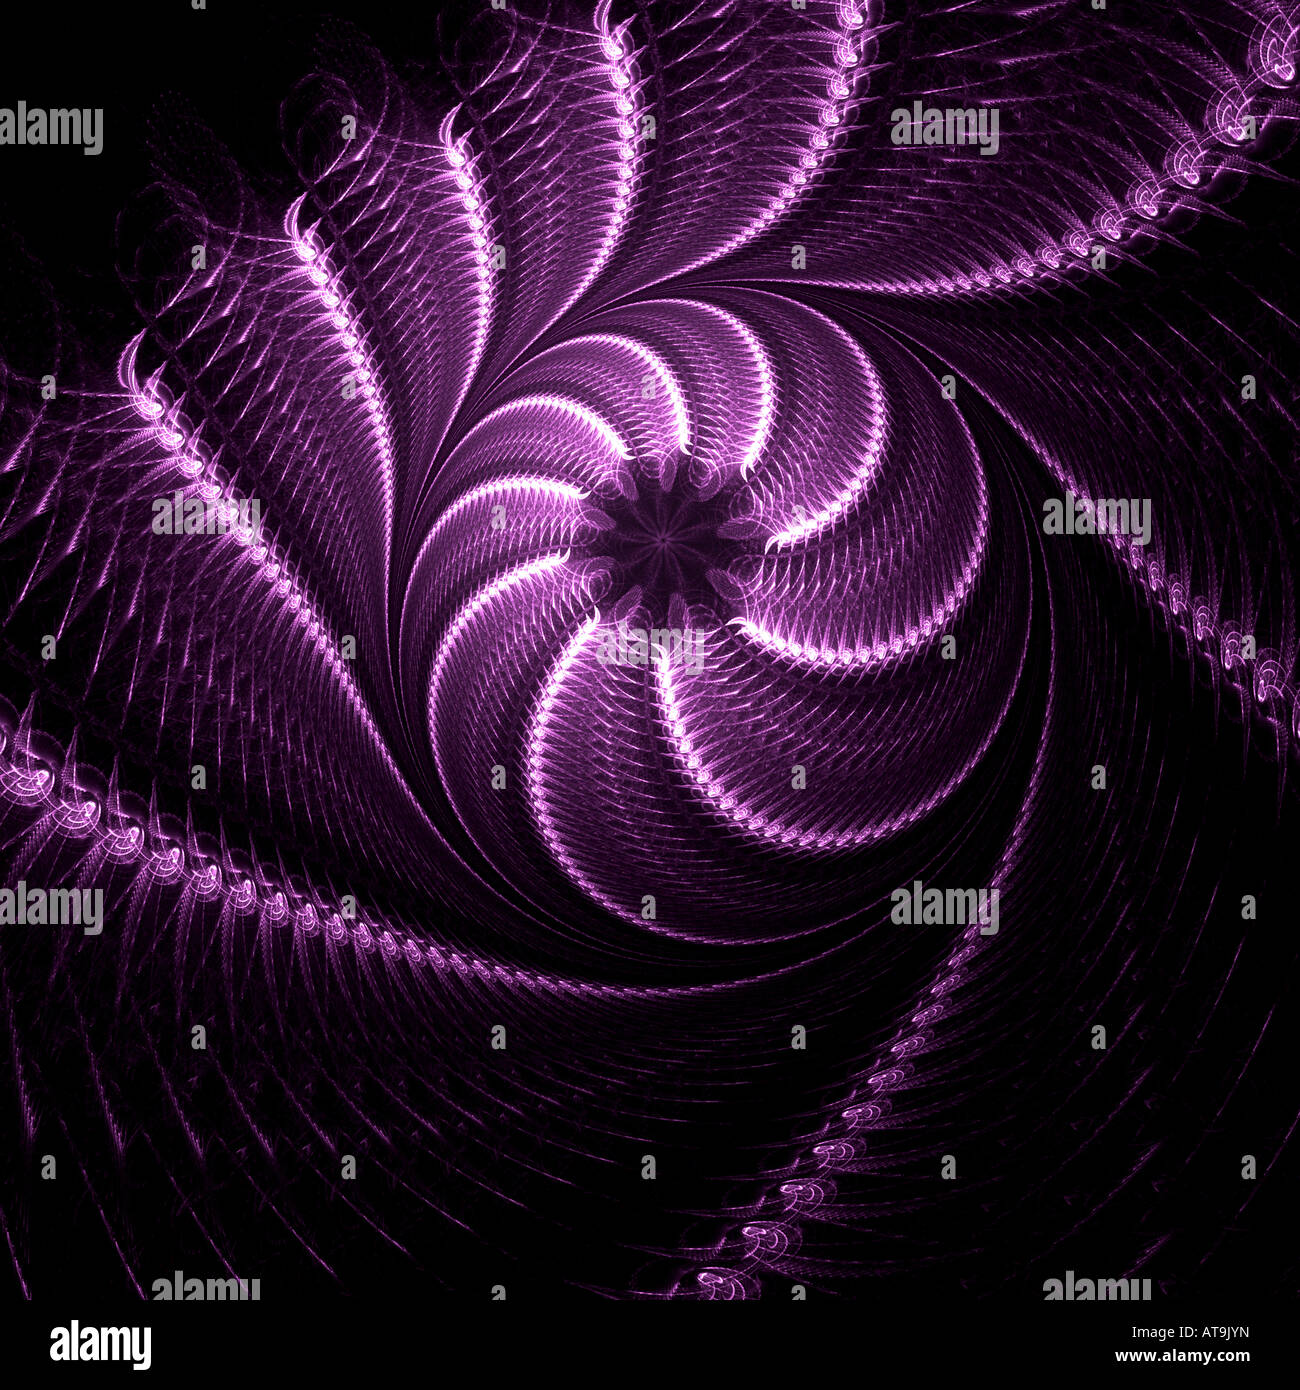 Résumé de l'image fractale ressemblant à une boule de lumière en spirale tissée Banque D'Images